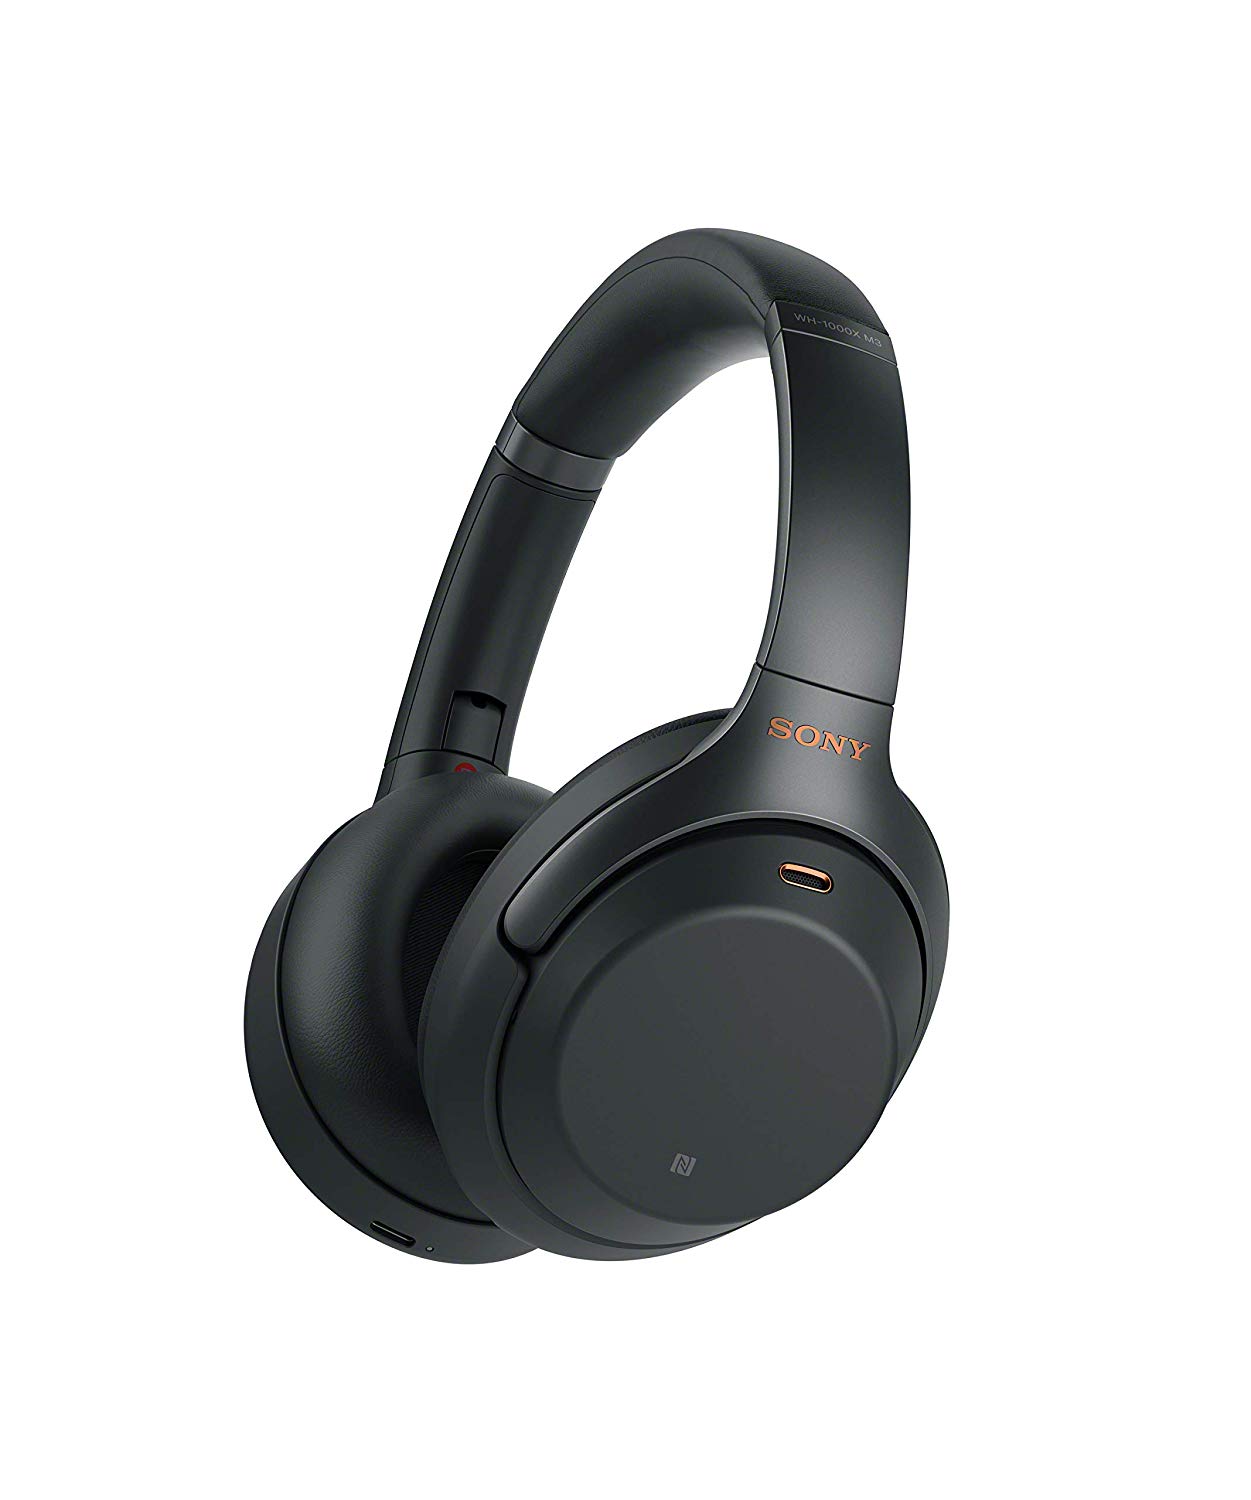 Sony WH-1000MX3 headphones